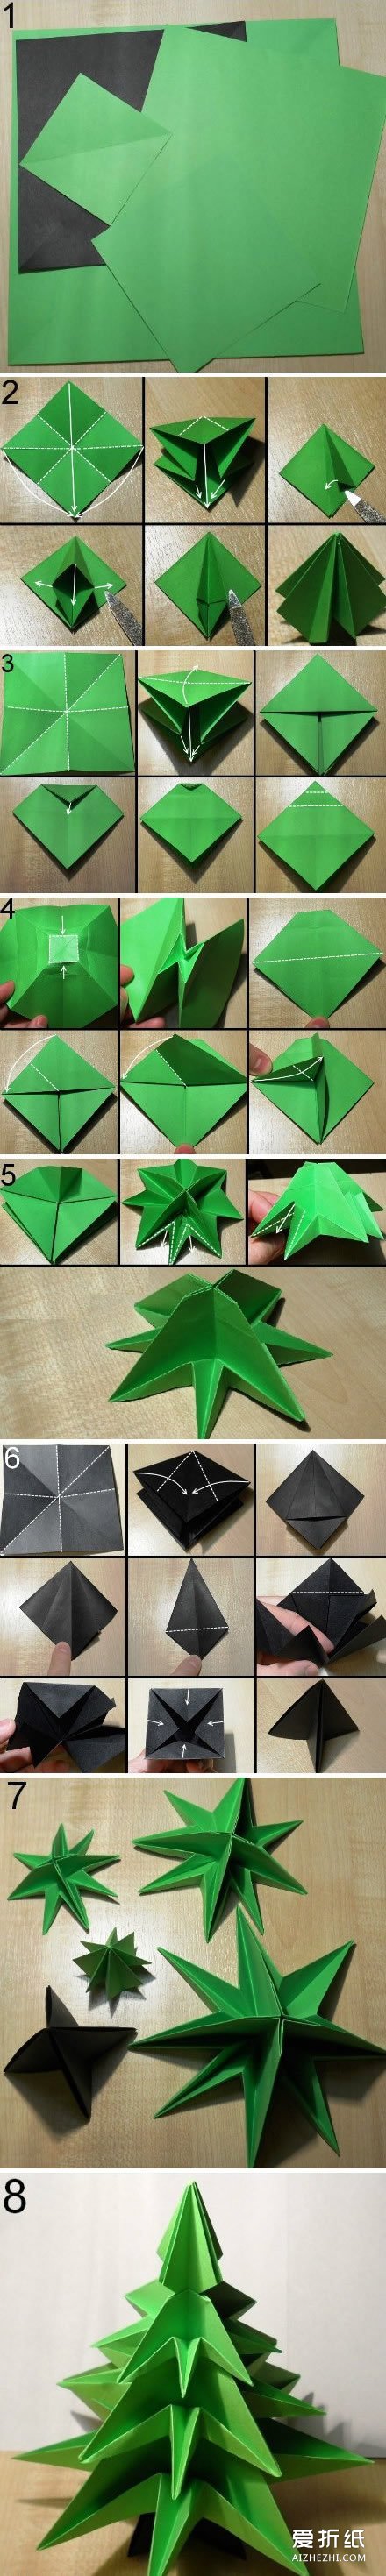 如何折纸立体圣诞树 立体圣诞树折纸图解- www.aizhezhi.com